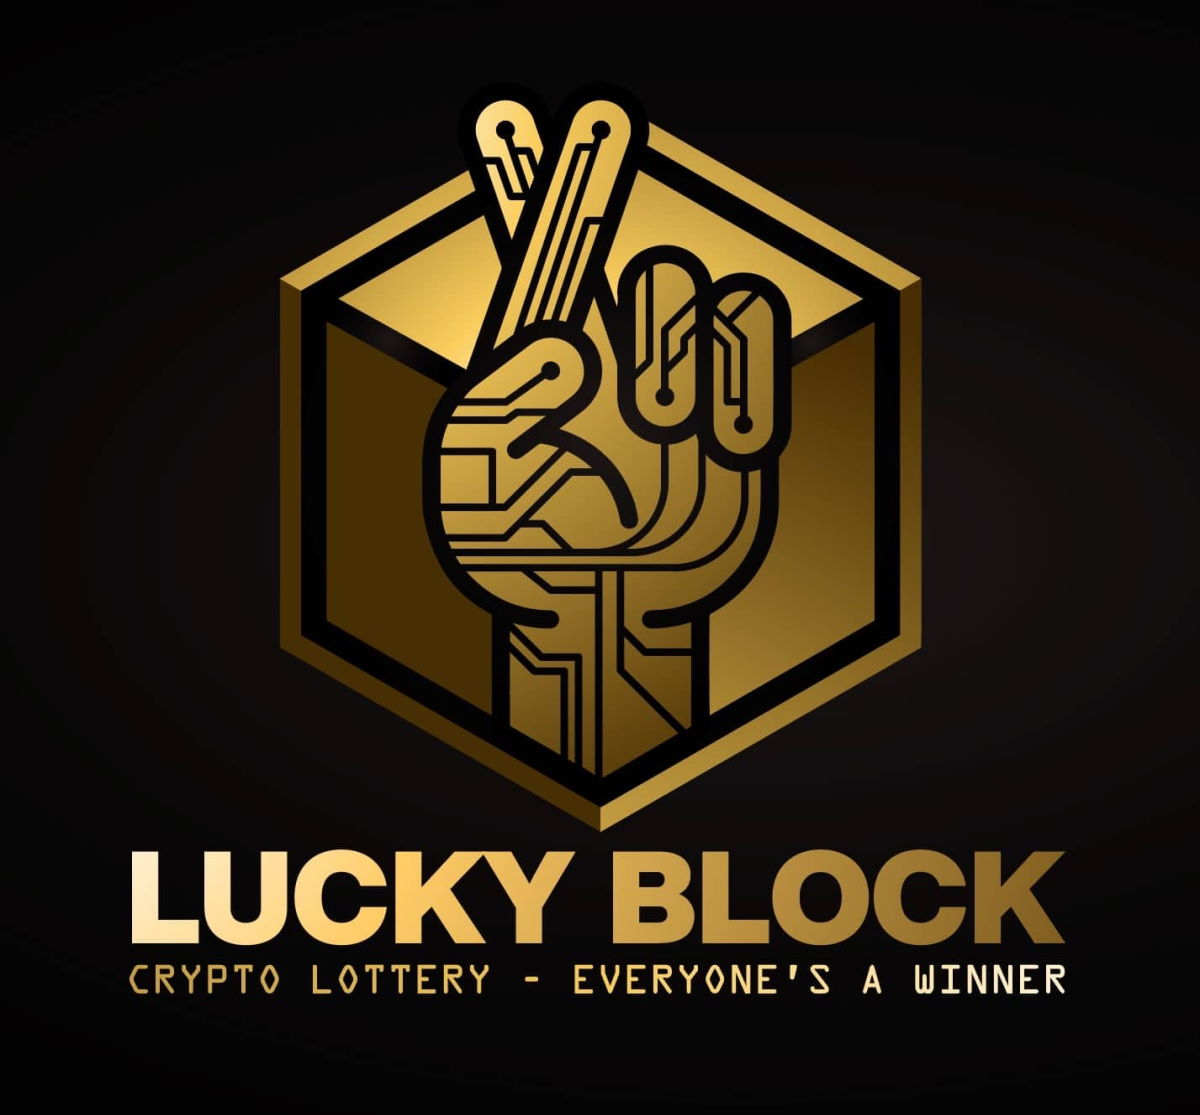 LBlock, l'innovativa criptovaluta con lotteria crittografica mondiale